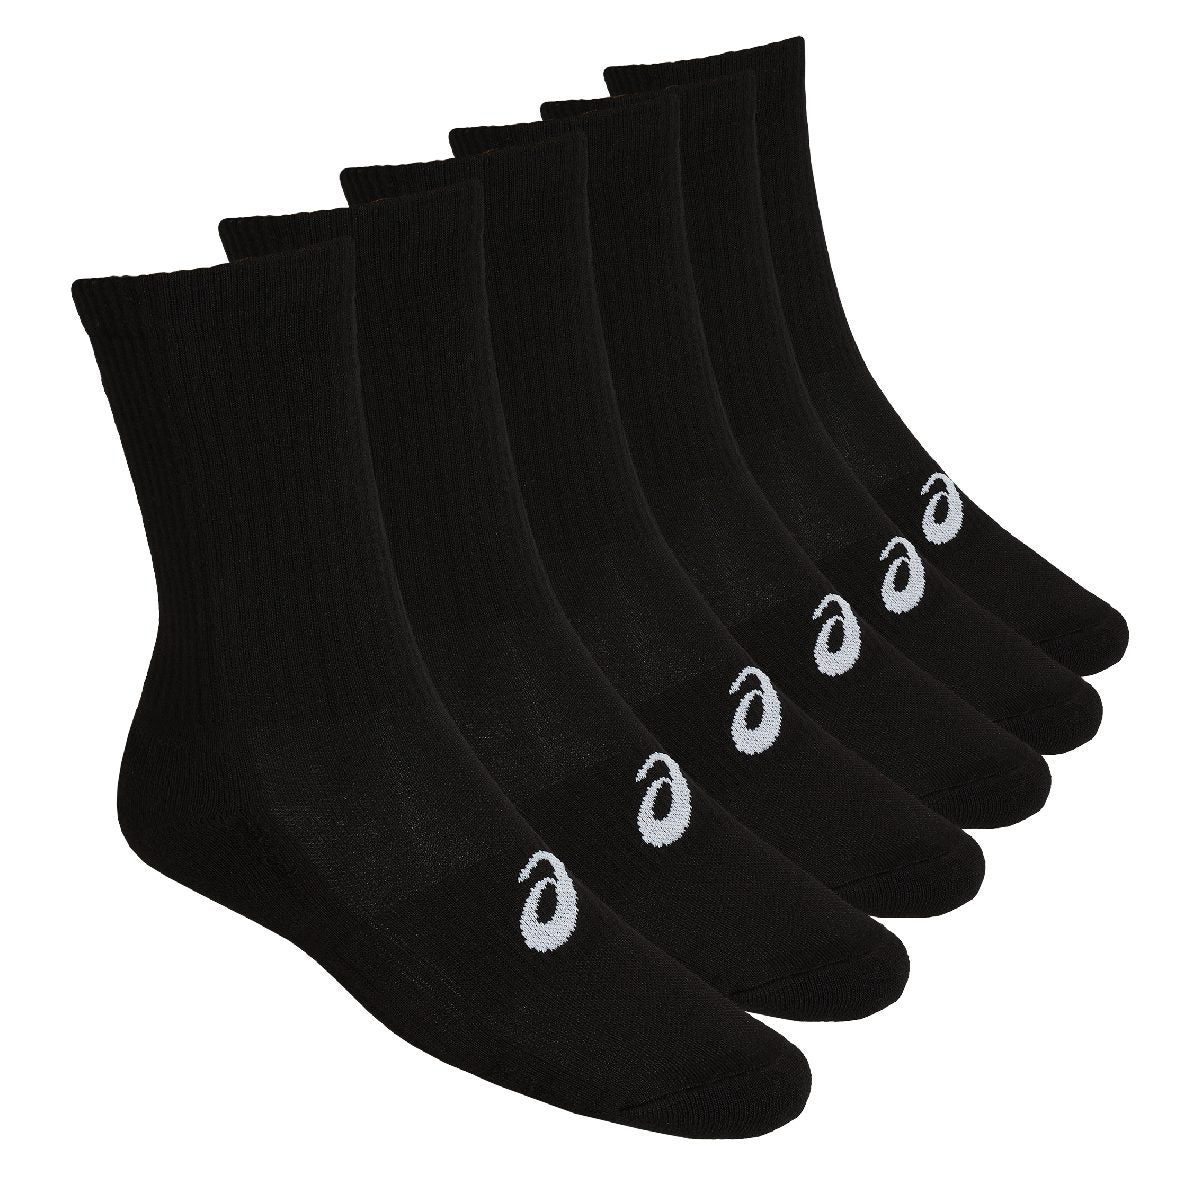 Asics 6Pkk Crew Sock Black גרבי גברים אסיקס